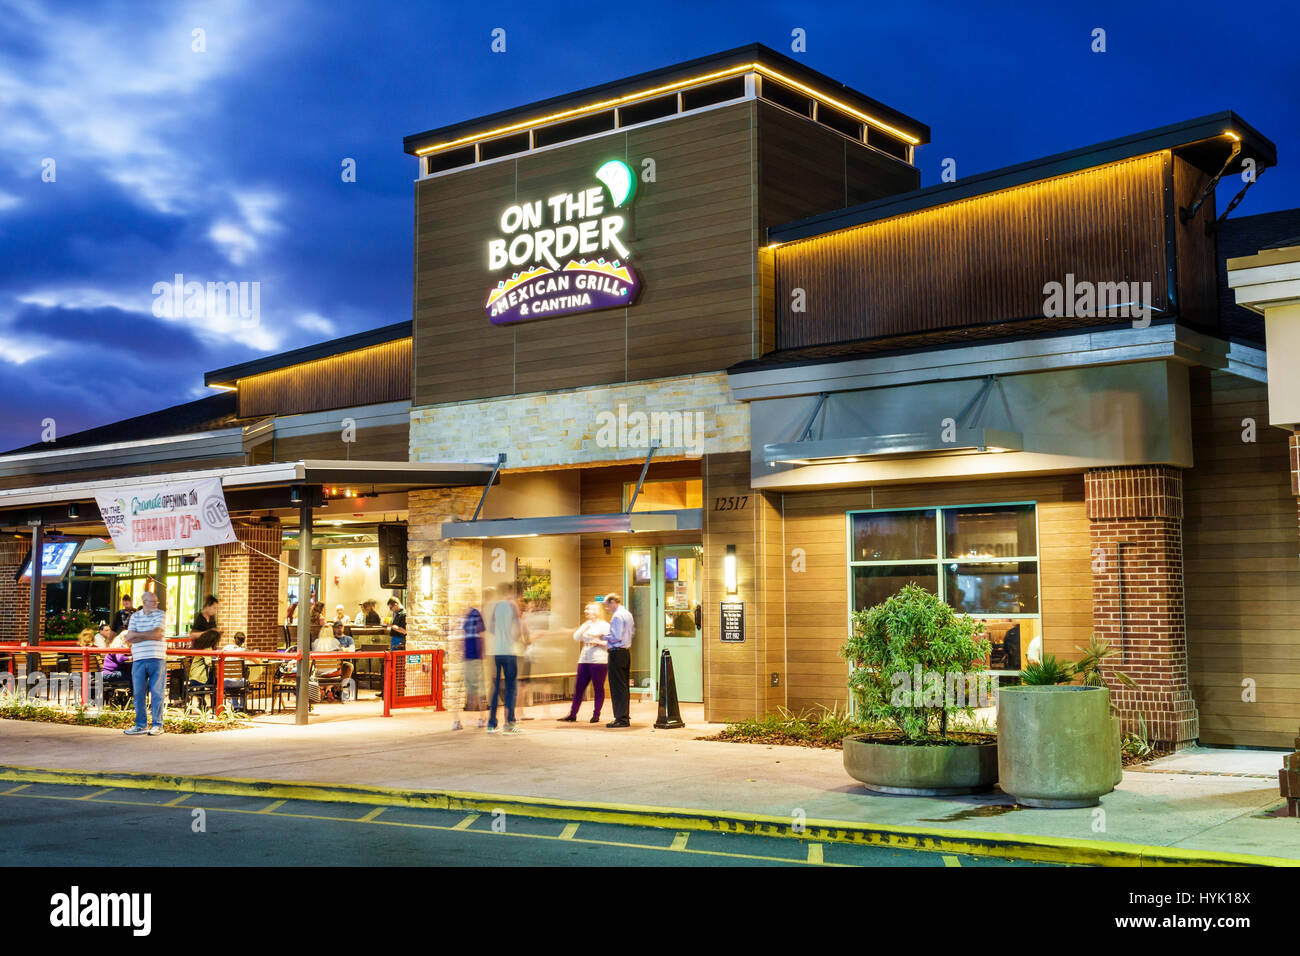 Orlando Florida, Crossroads of Lake Buena Vista, restaurants, centre commercial, extérieur, sur la frontière, grill mexicain, cantina, restaurant restaurants restauration repas c Banque D'Images